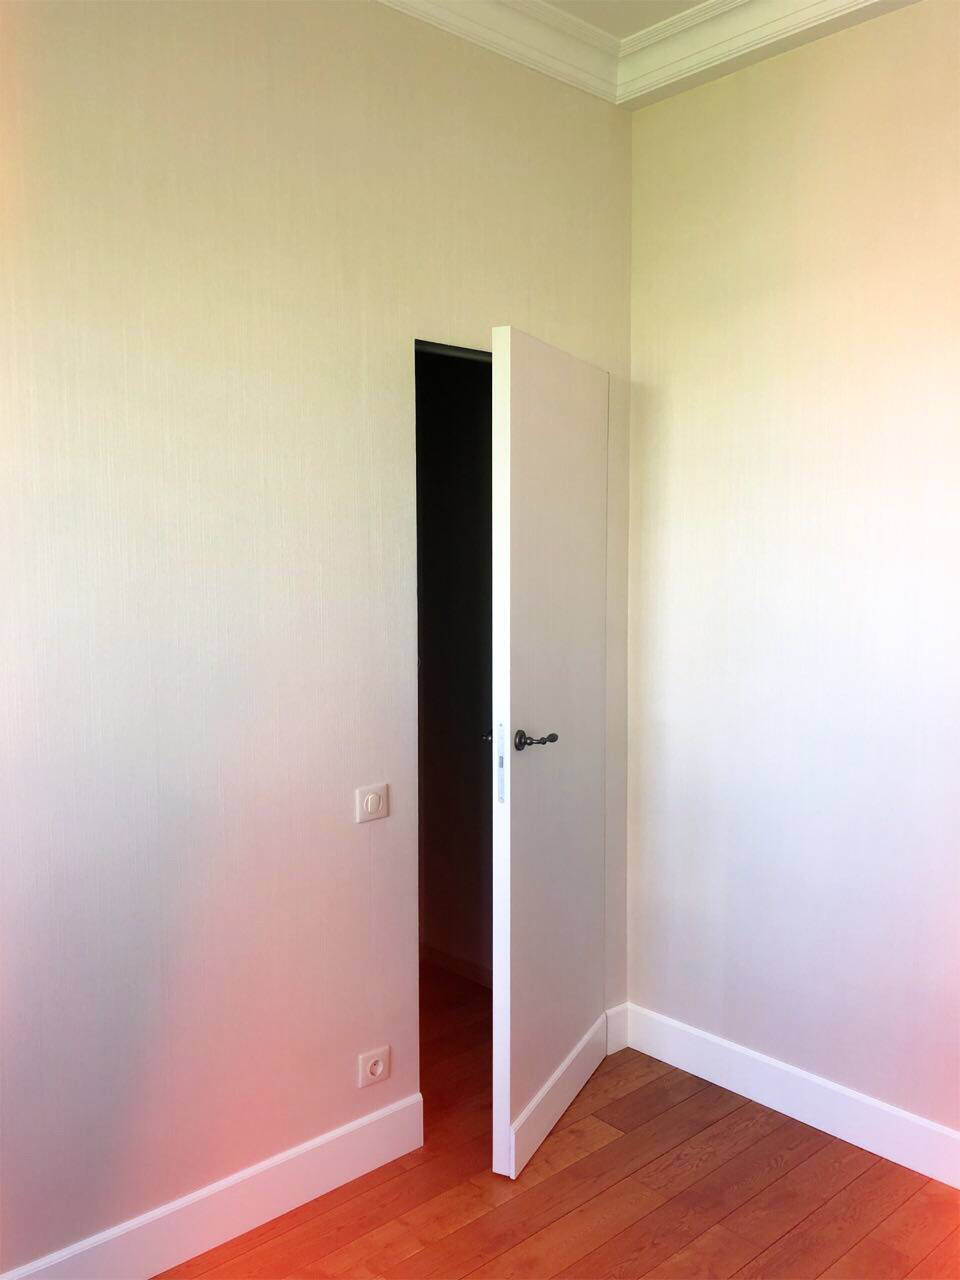 Скрытые двери в интерьере: 37 реальных фото и идей дизайна